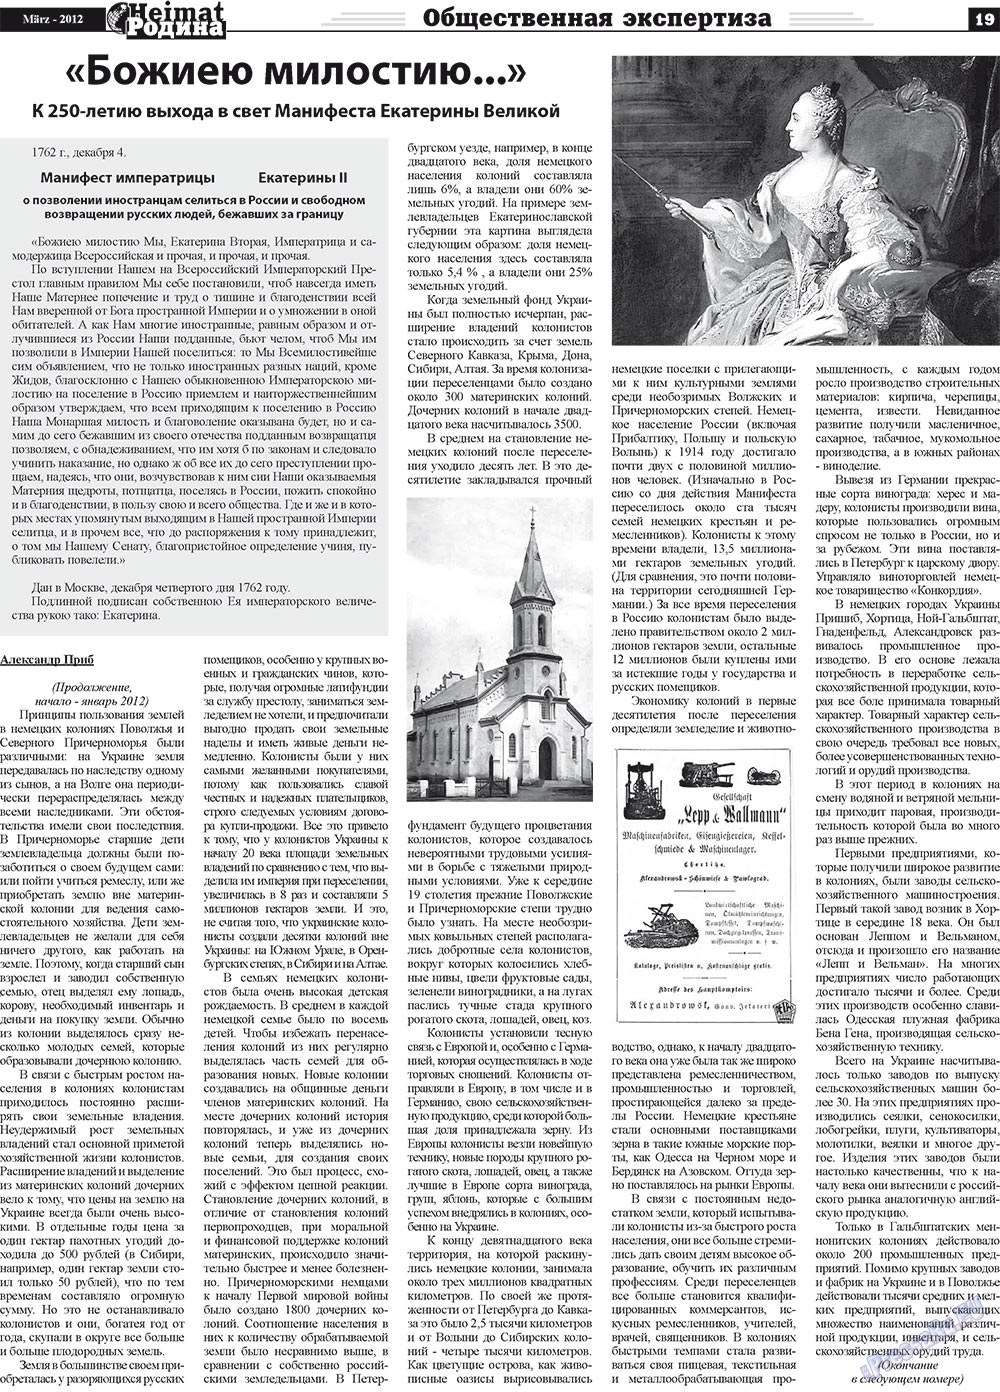 Heimat-Родина (газета). 2012 год, номер 3, стр. 19